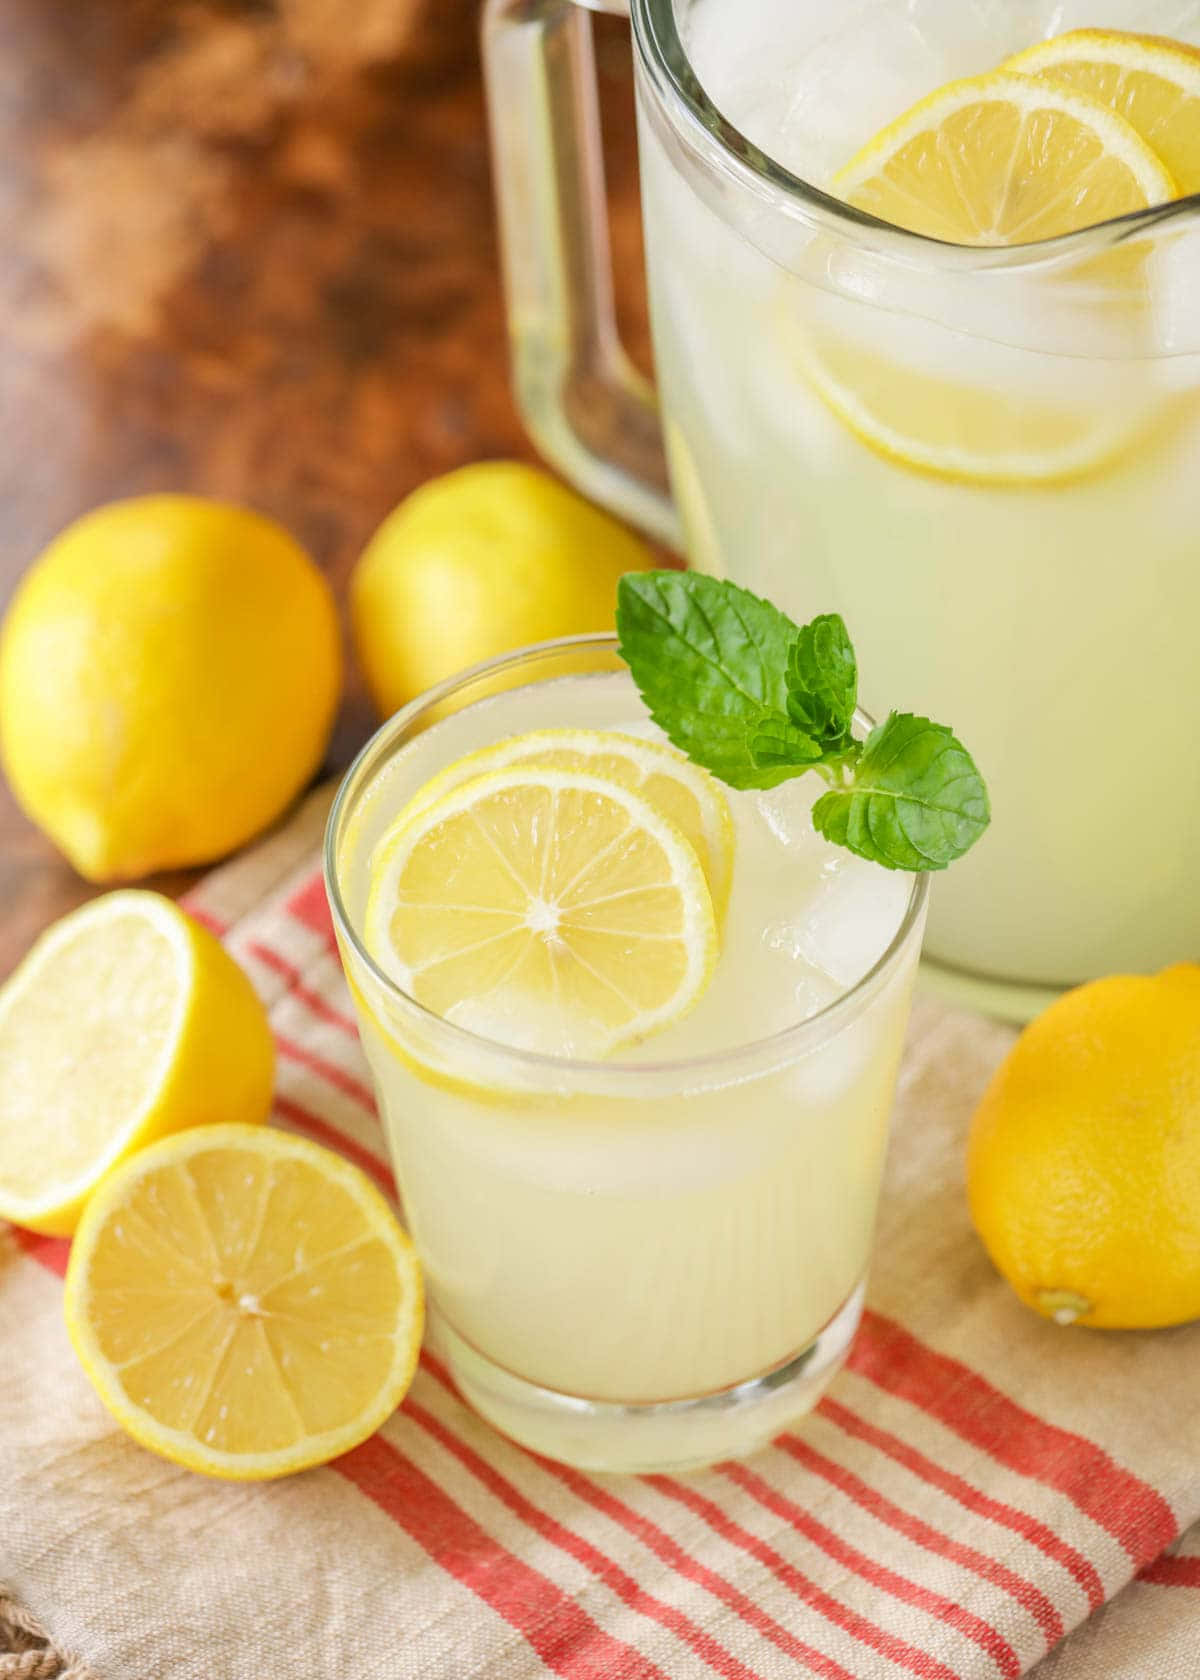 Refreshing glasses of homemade lemonade